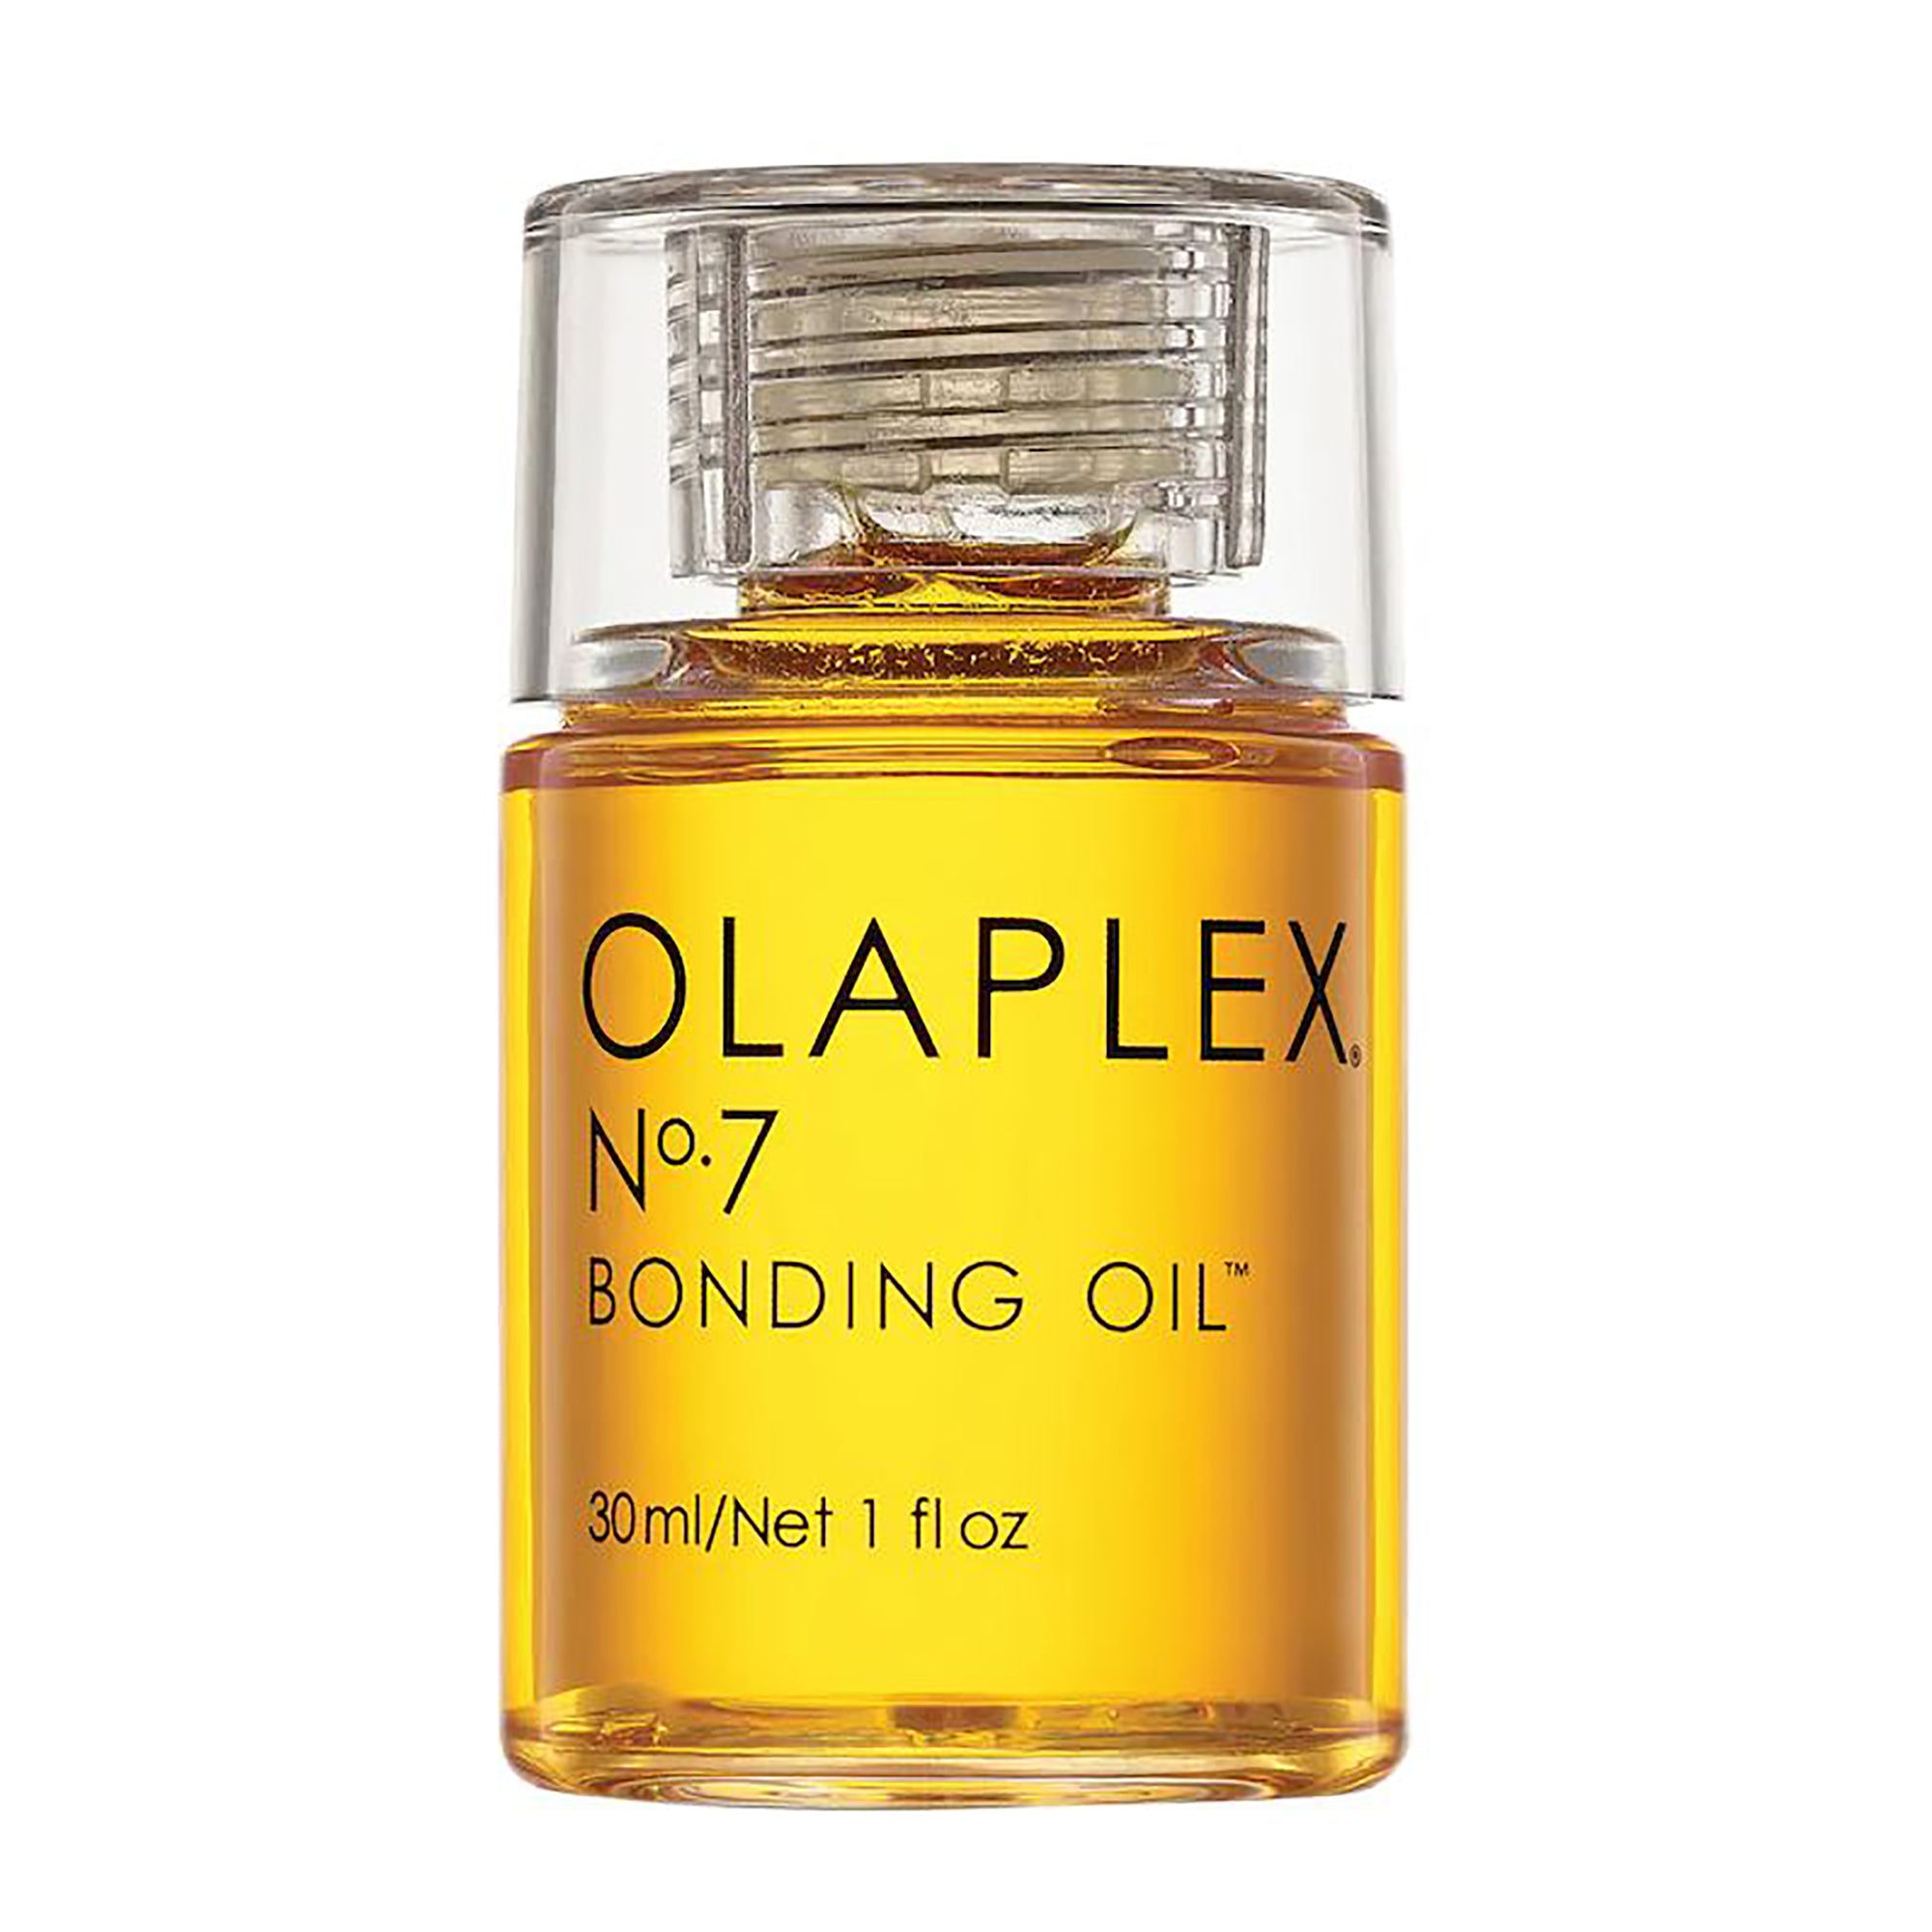 GOLDEN SAND Perfume Body Oil 1.0 oz - 30 ml Roll On Bottle NEW Free Ship  UNISEX